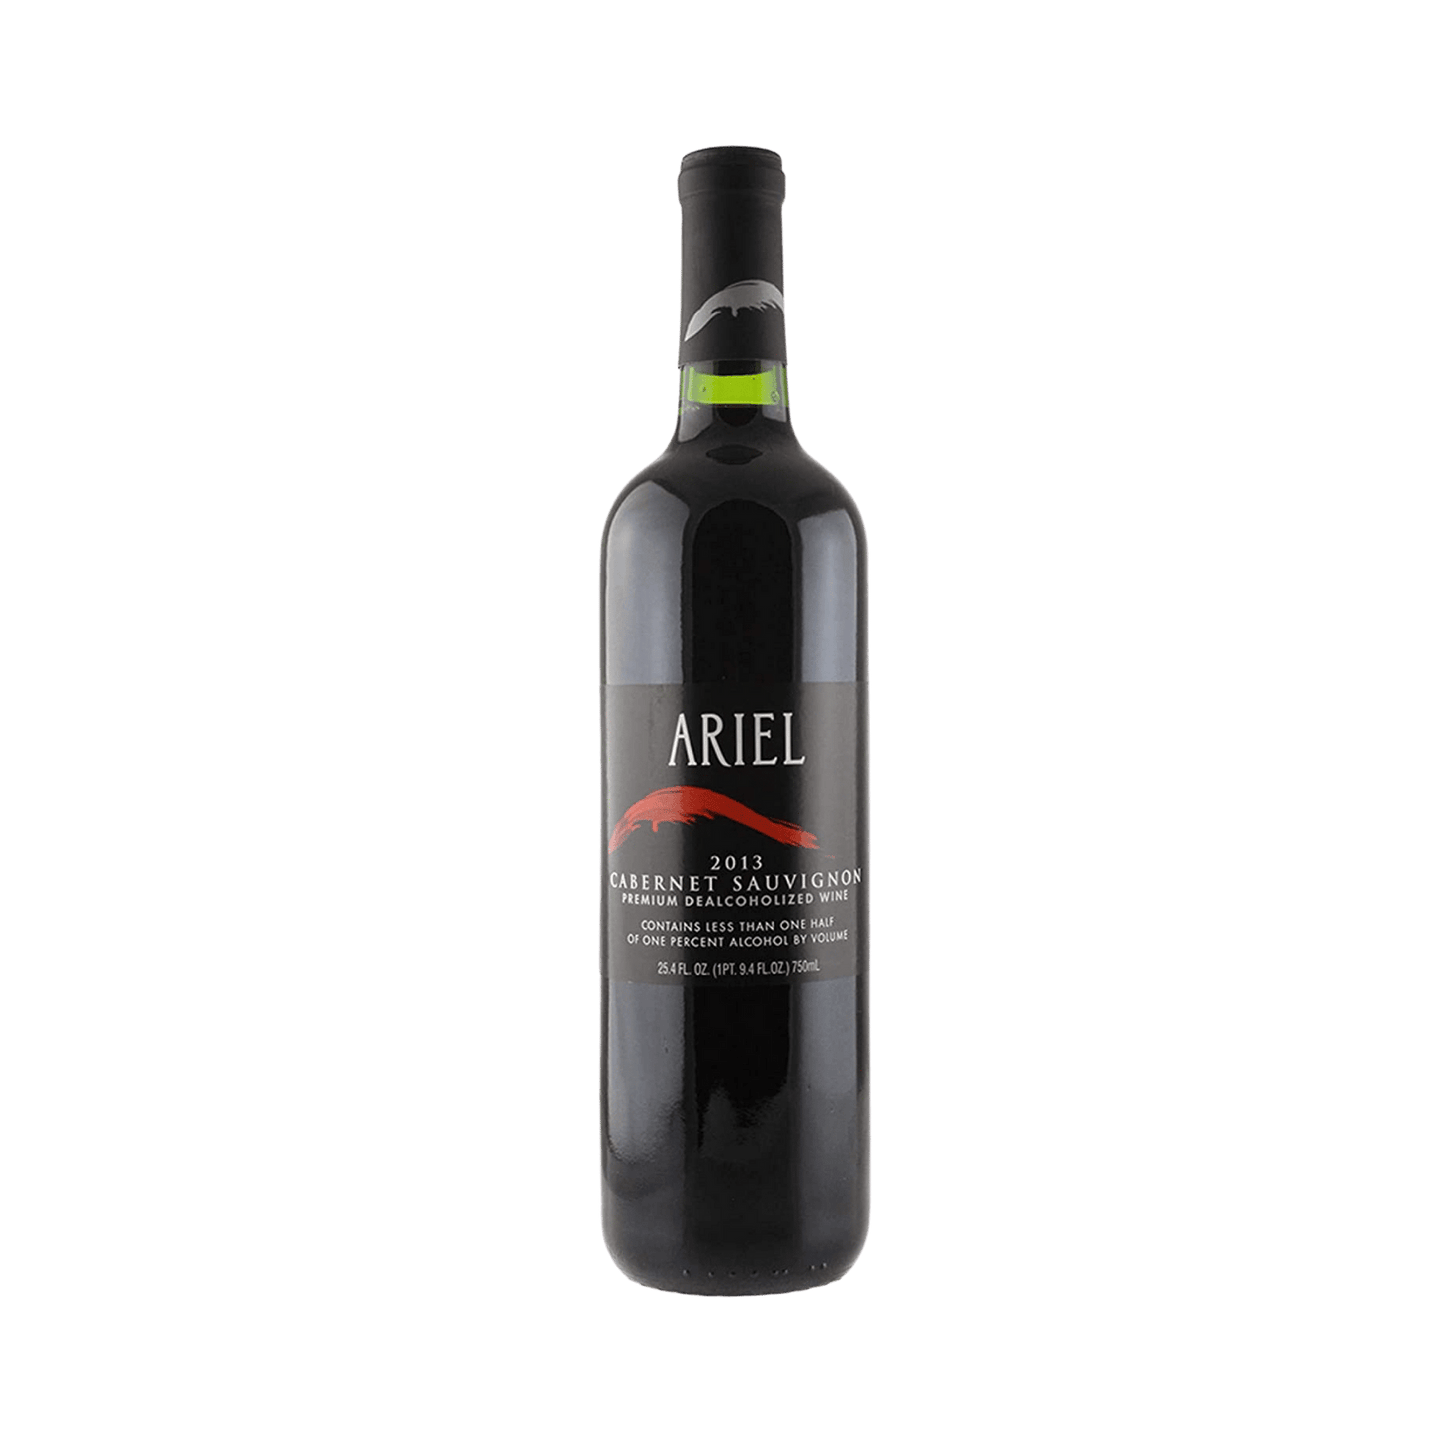 Ariel Cabernet Sauvignon Premium Dealcoholized Wine